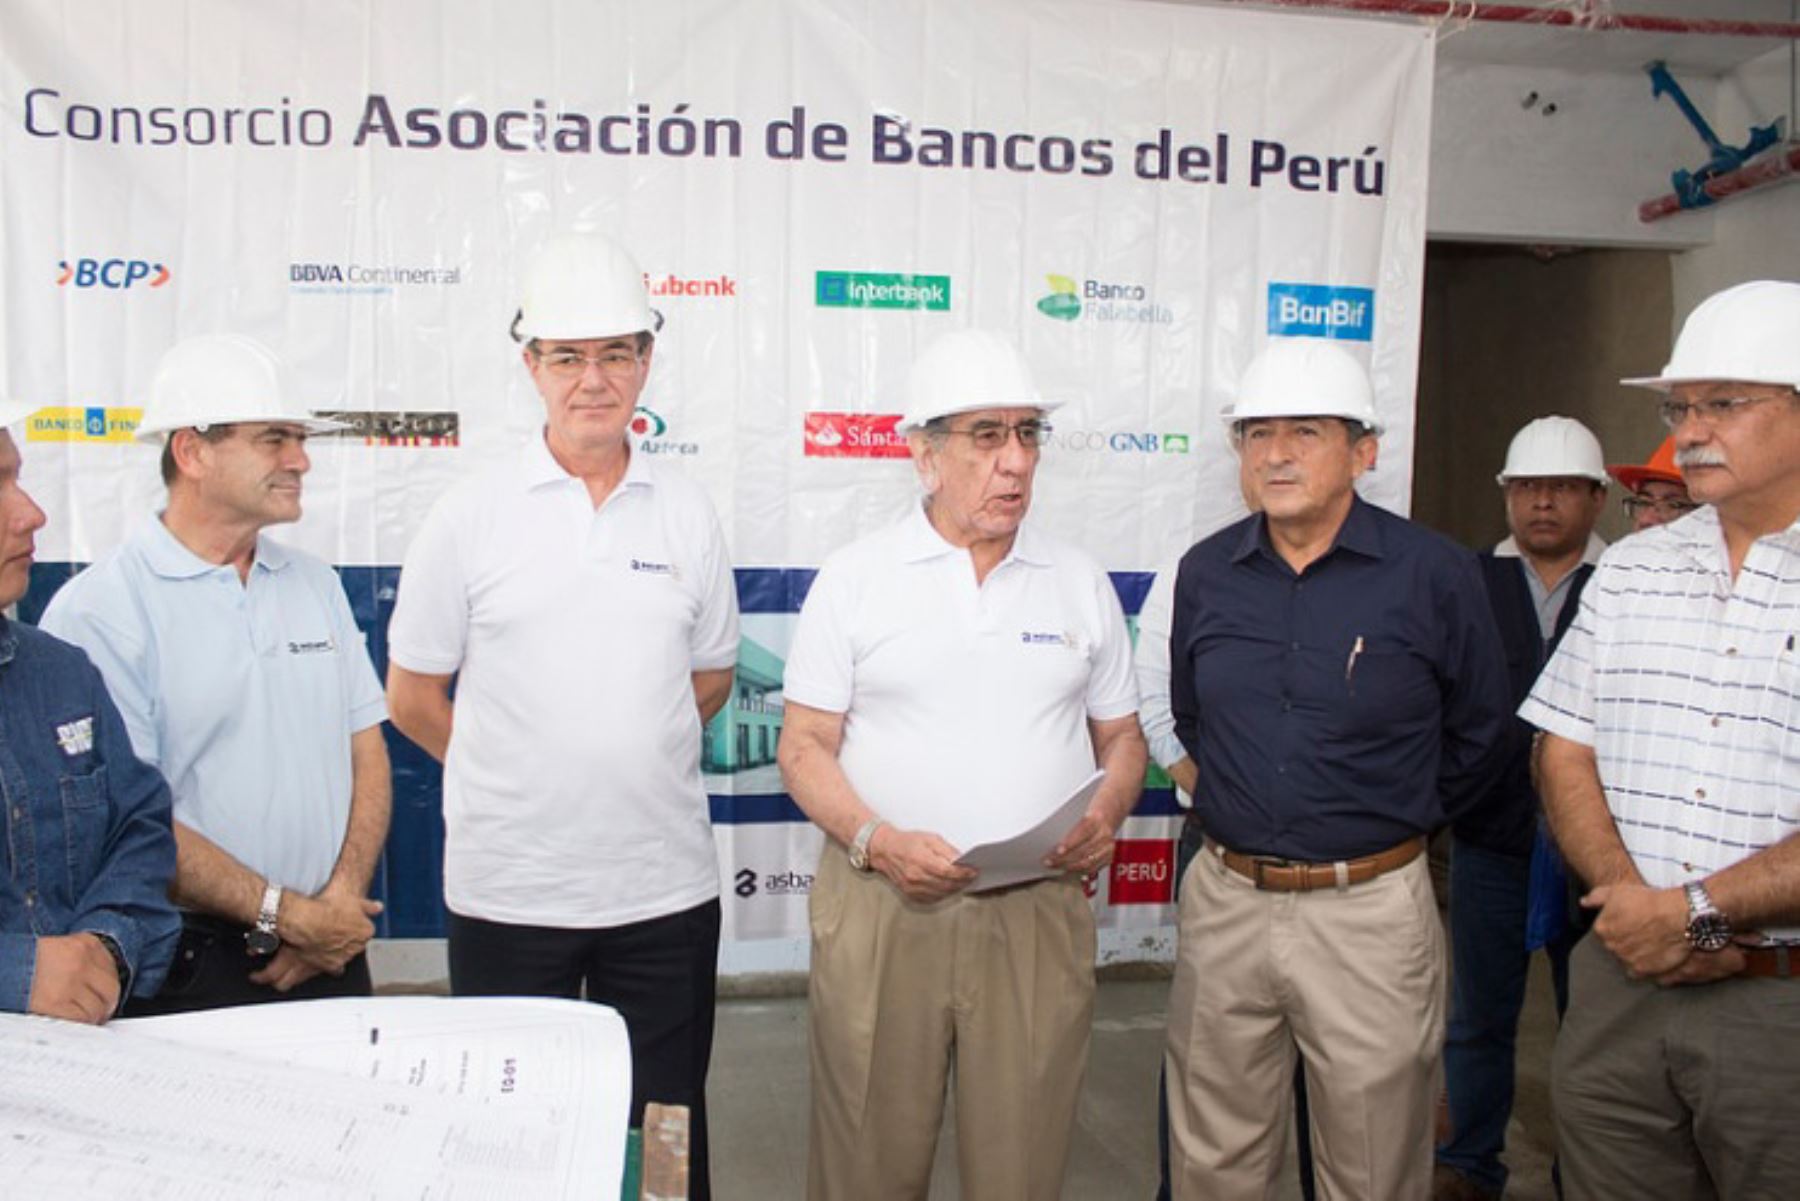 La Asociación de Bancos del Perú (Asbanc) estimó que en julio próximo entregará las obras culminadas y completamente equipadas de la comisaria de Chulucanas, en la provincia de Morropón, región Piura.